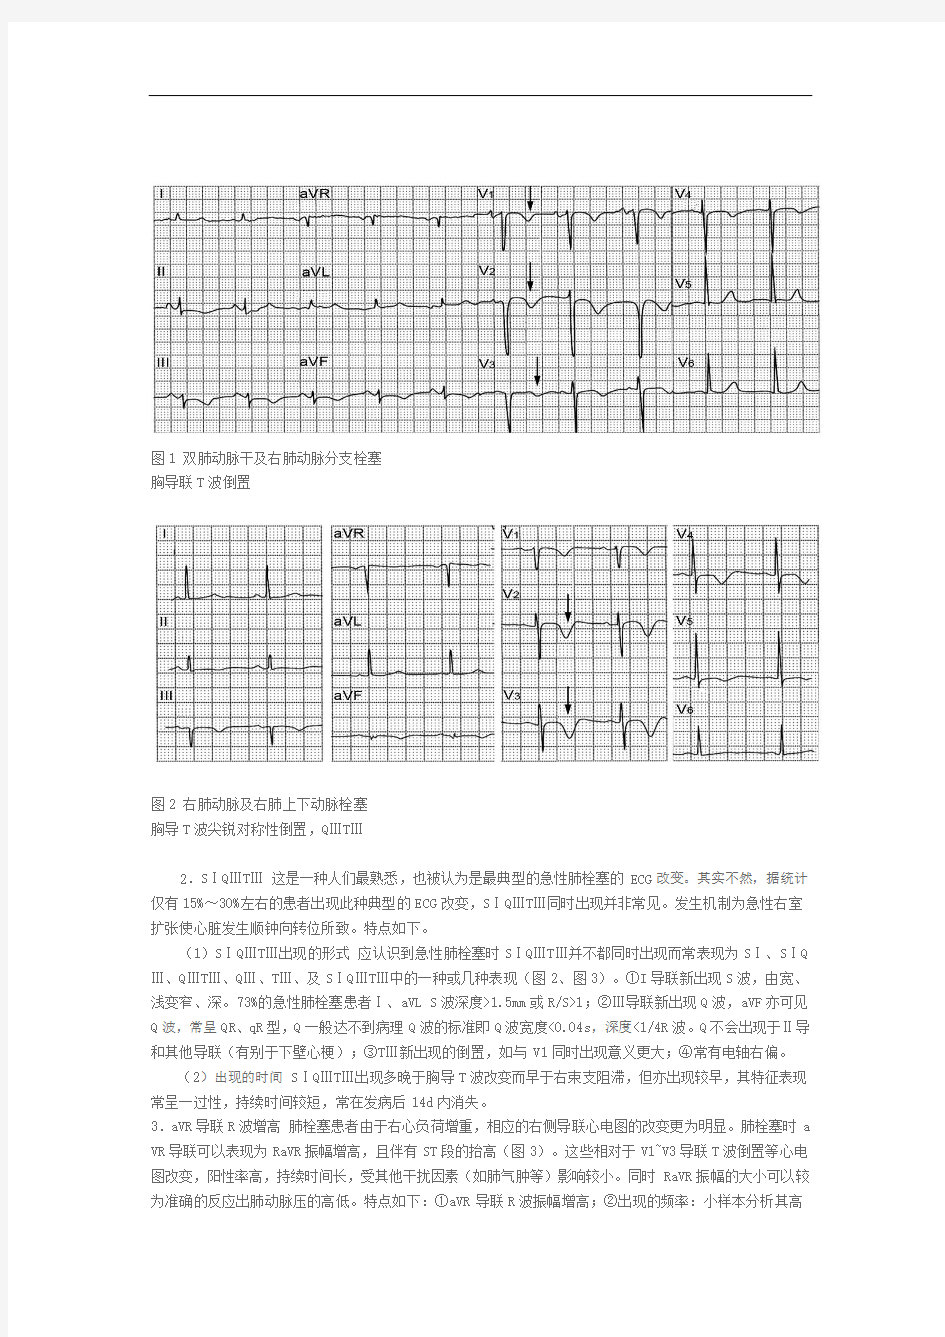 急性肺栓塞的心电图改变